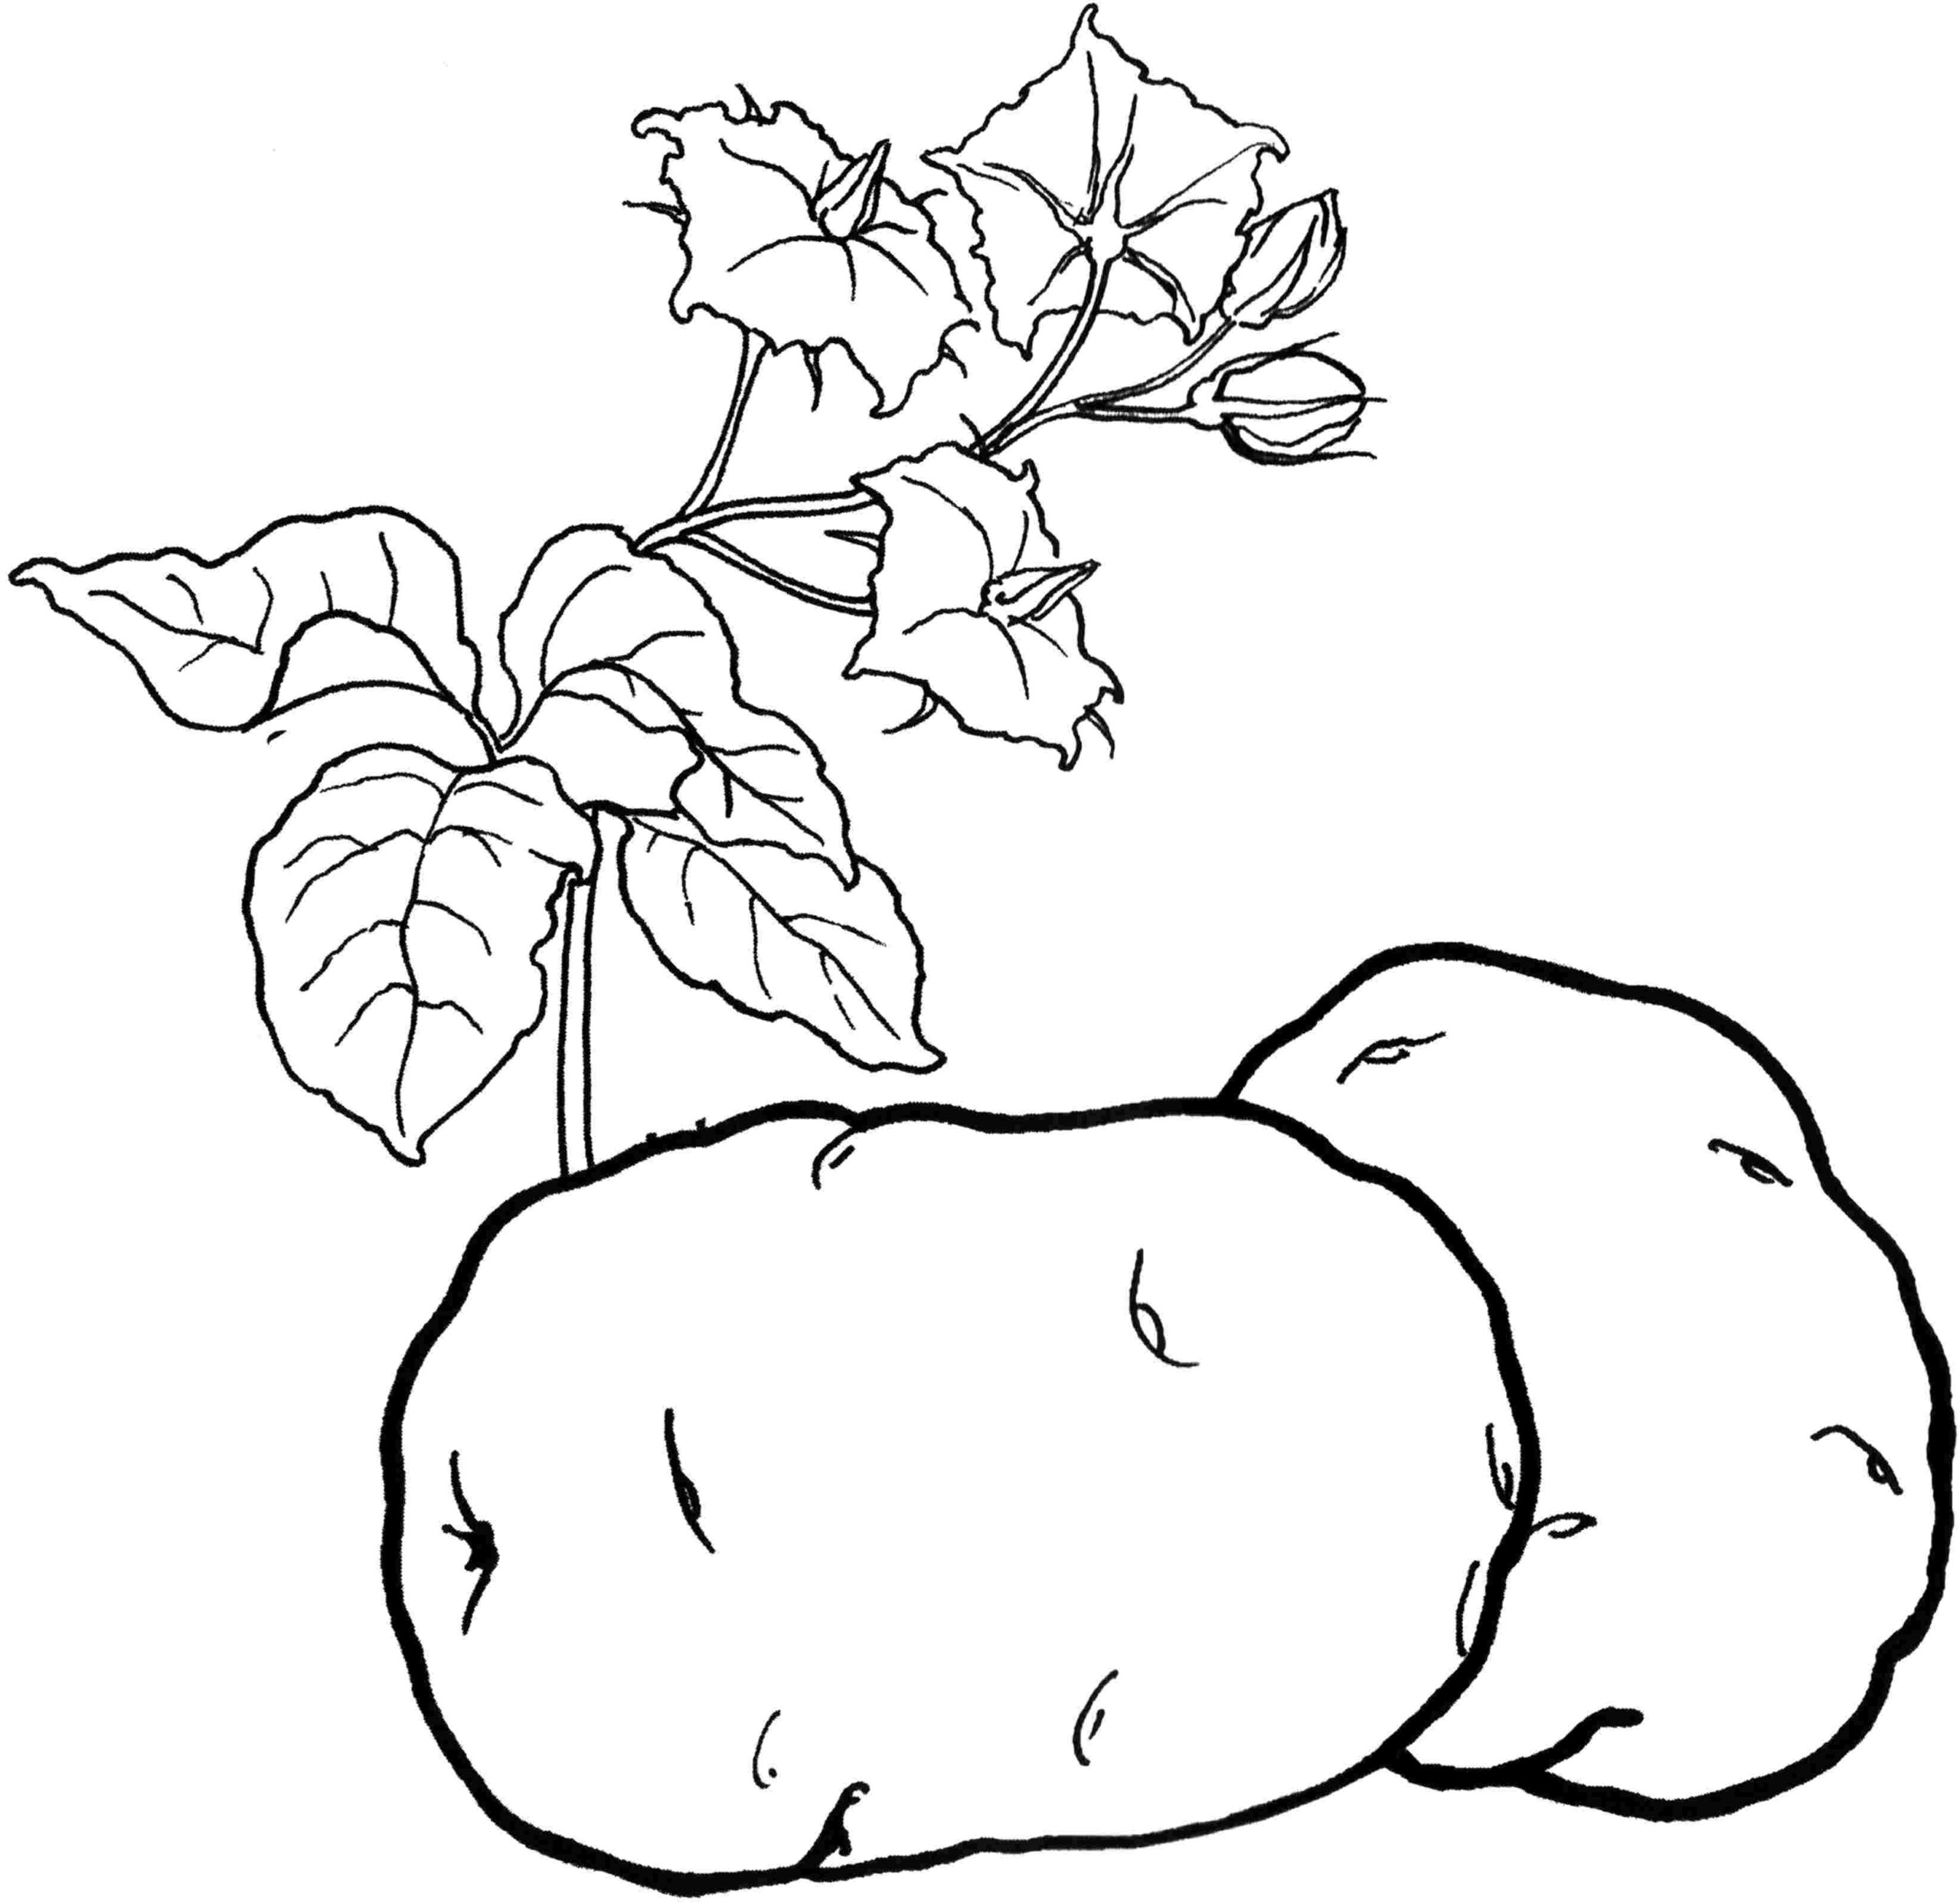 Kolorowanka warzywa dwie duże bulwy ziemniaka z rosnącymi liśćmi i kwiatkami